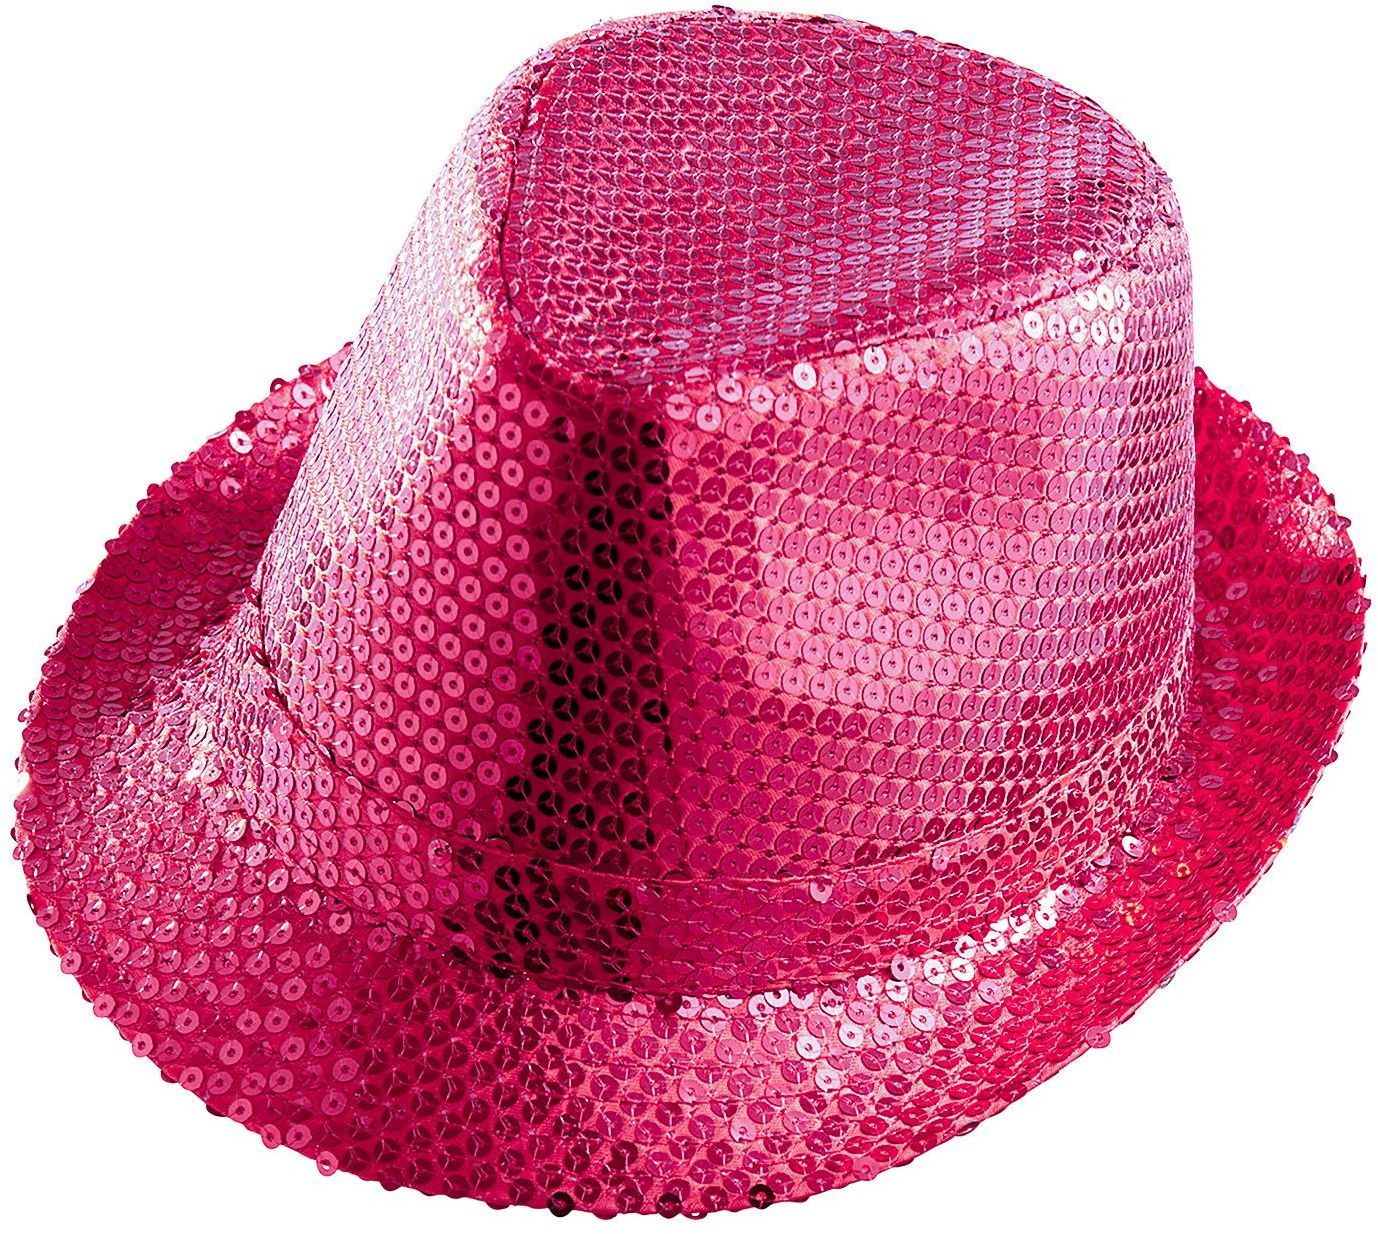 Roze pailletten hoed